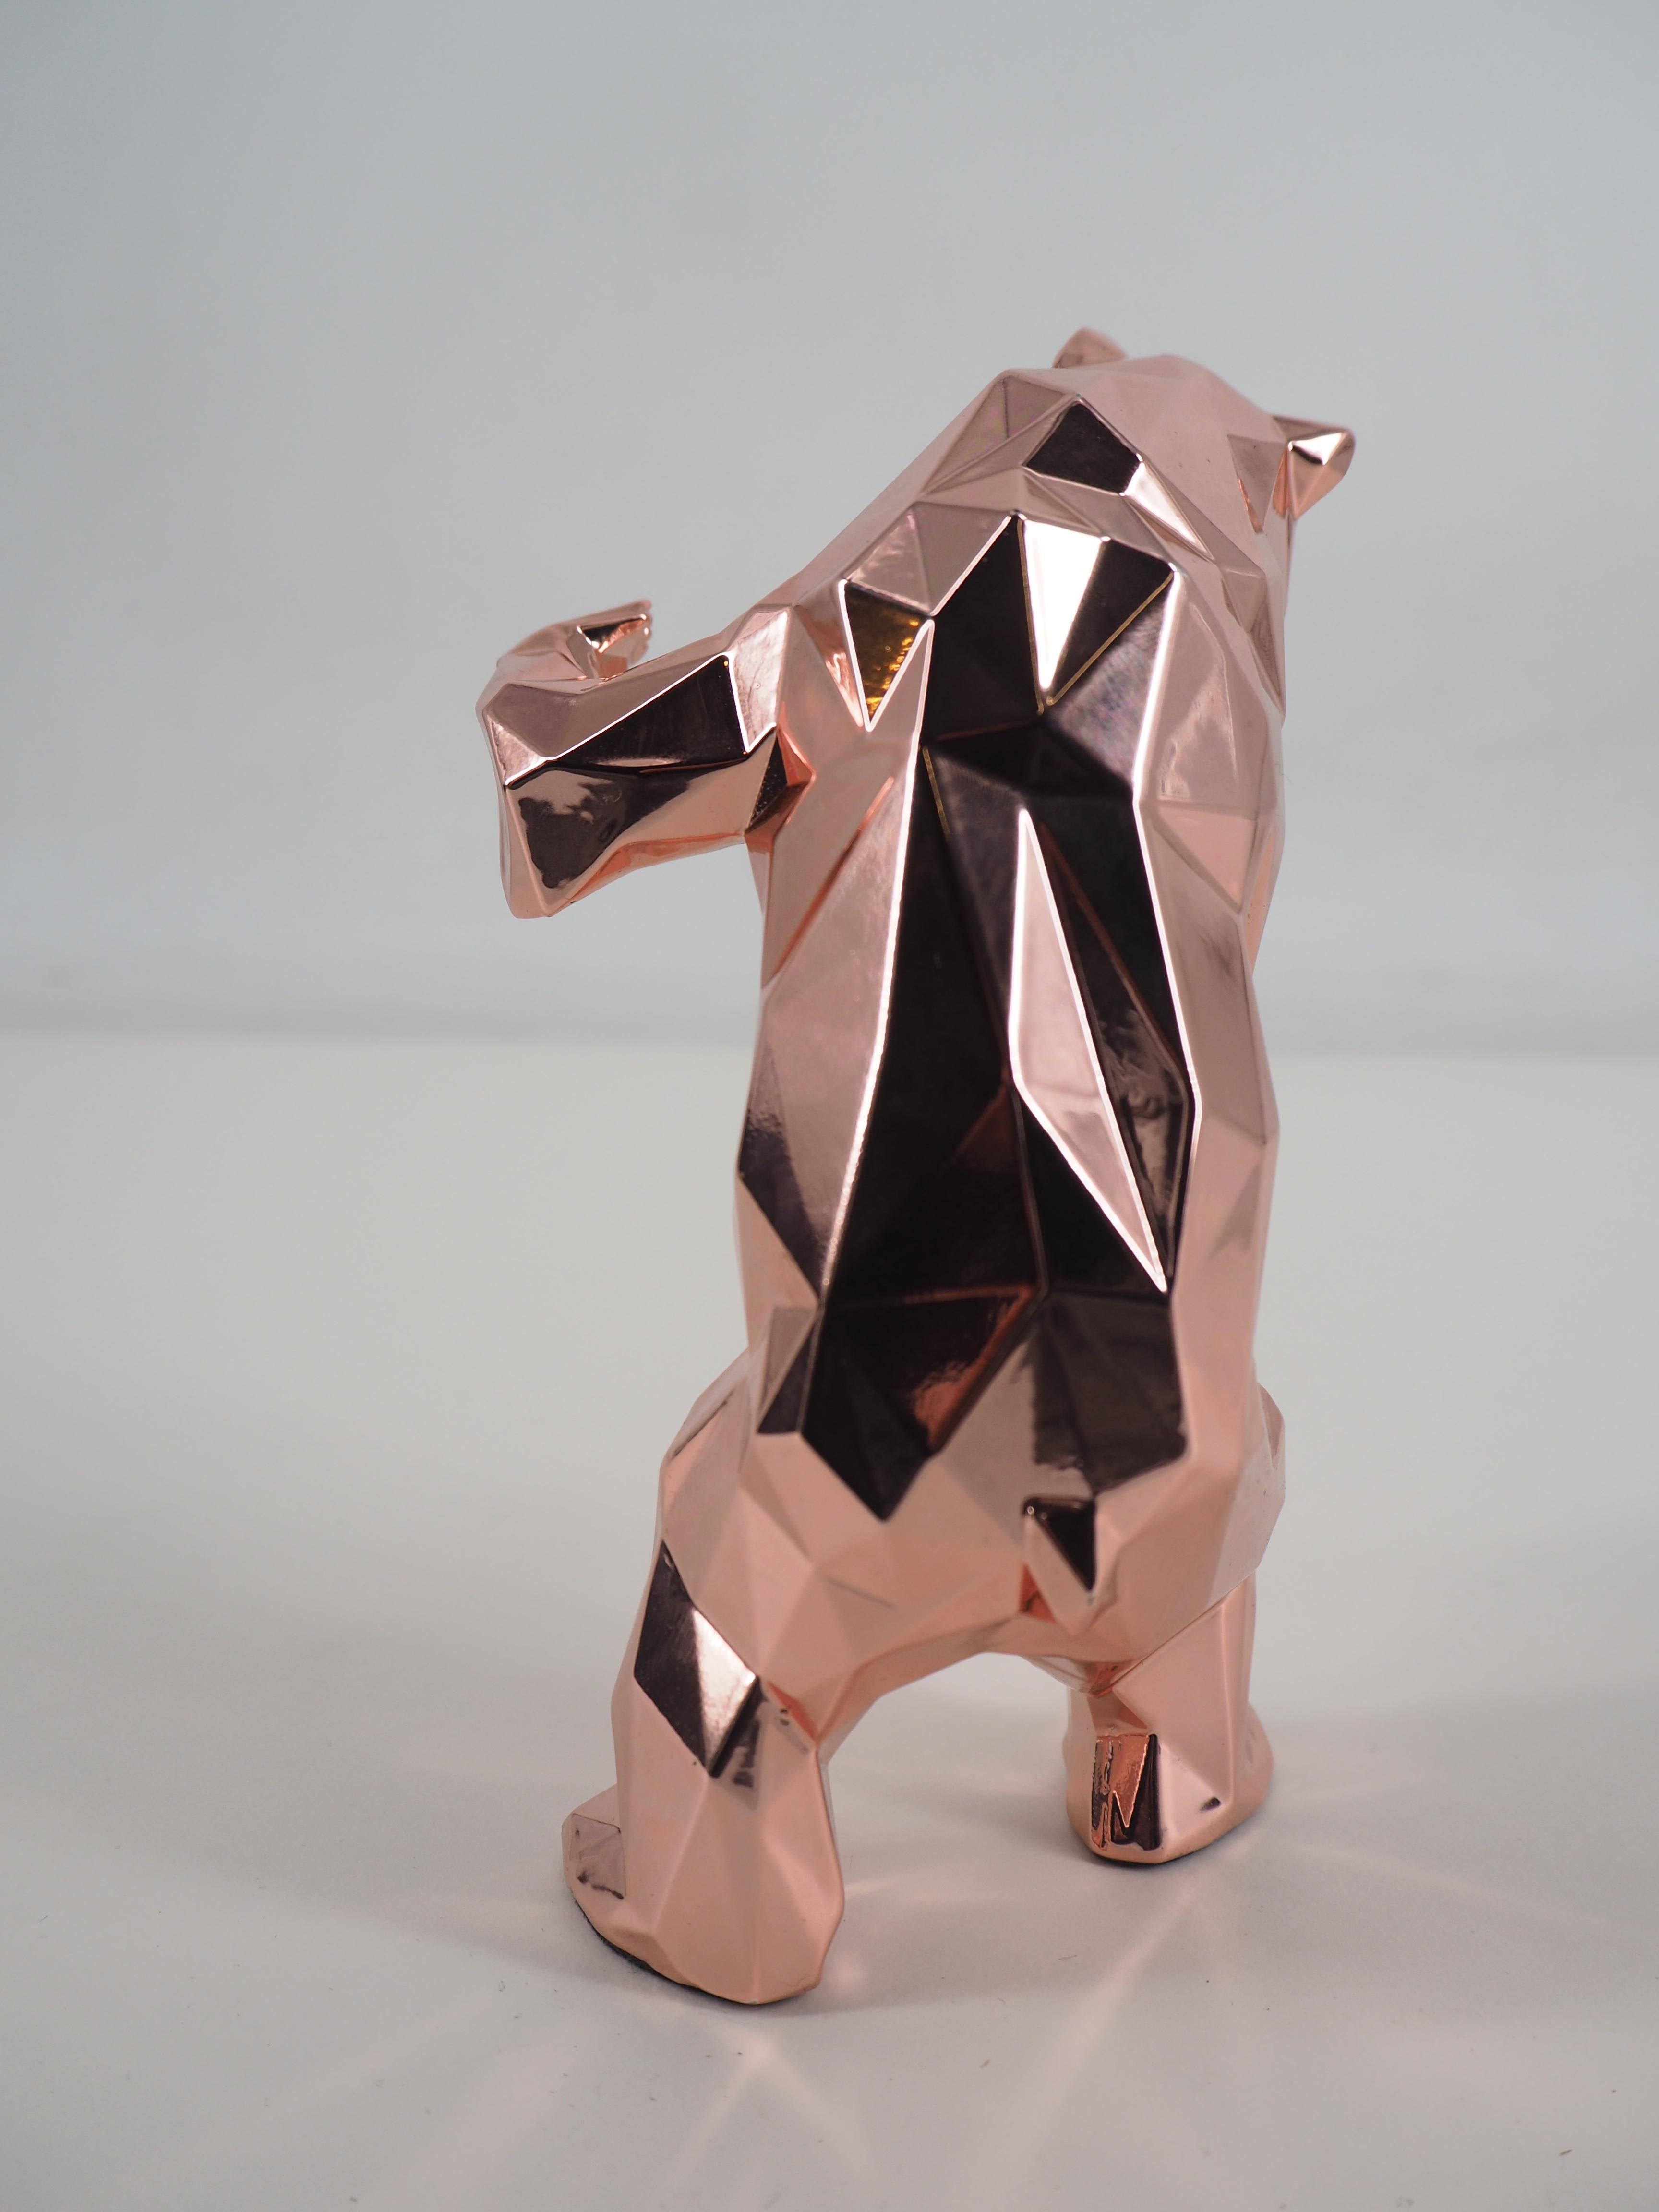 Standender Bär (Goldrosa Auflage) - Skulptur in Originalverpackung mit Künstlermantel (Grau), Figurative Sculpture, von Richard Orlinski